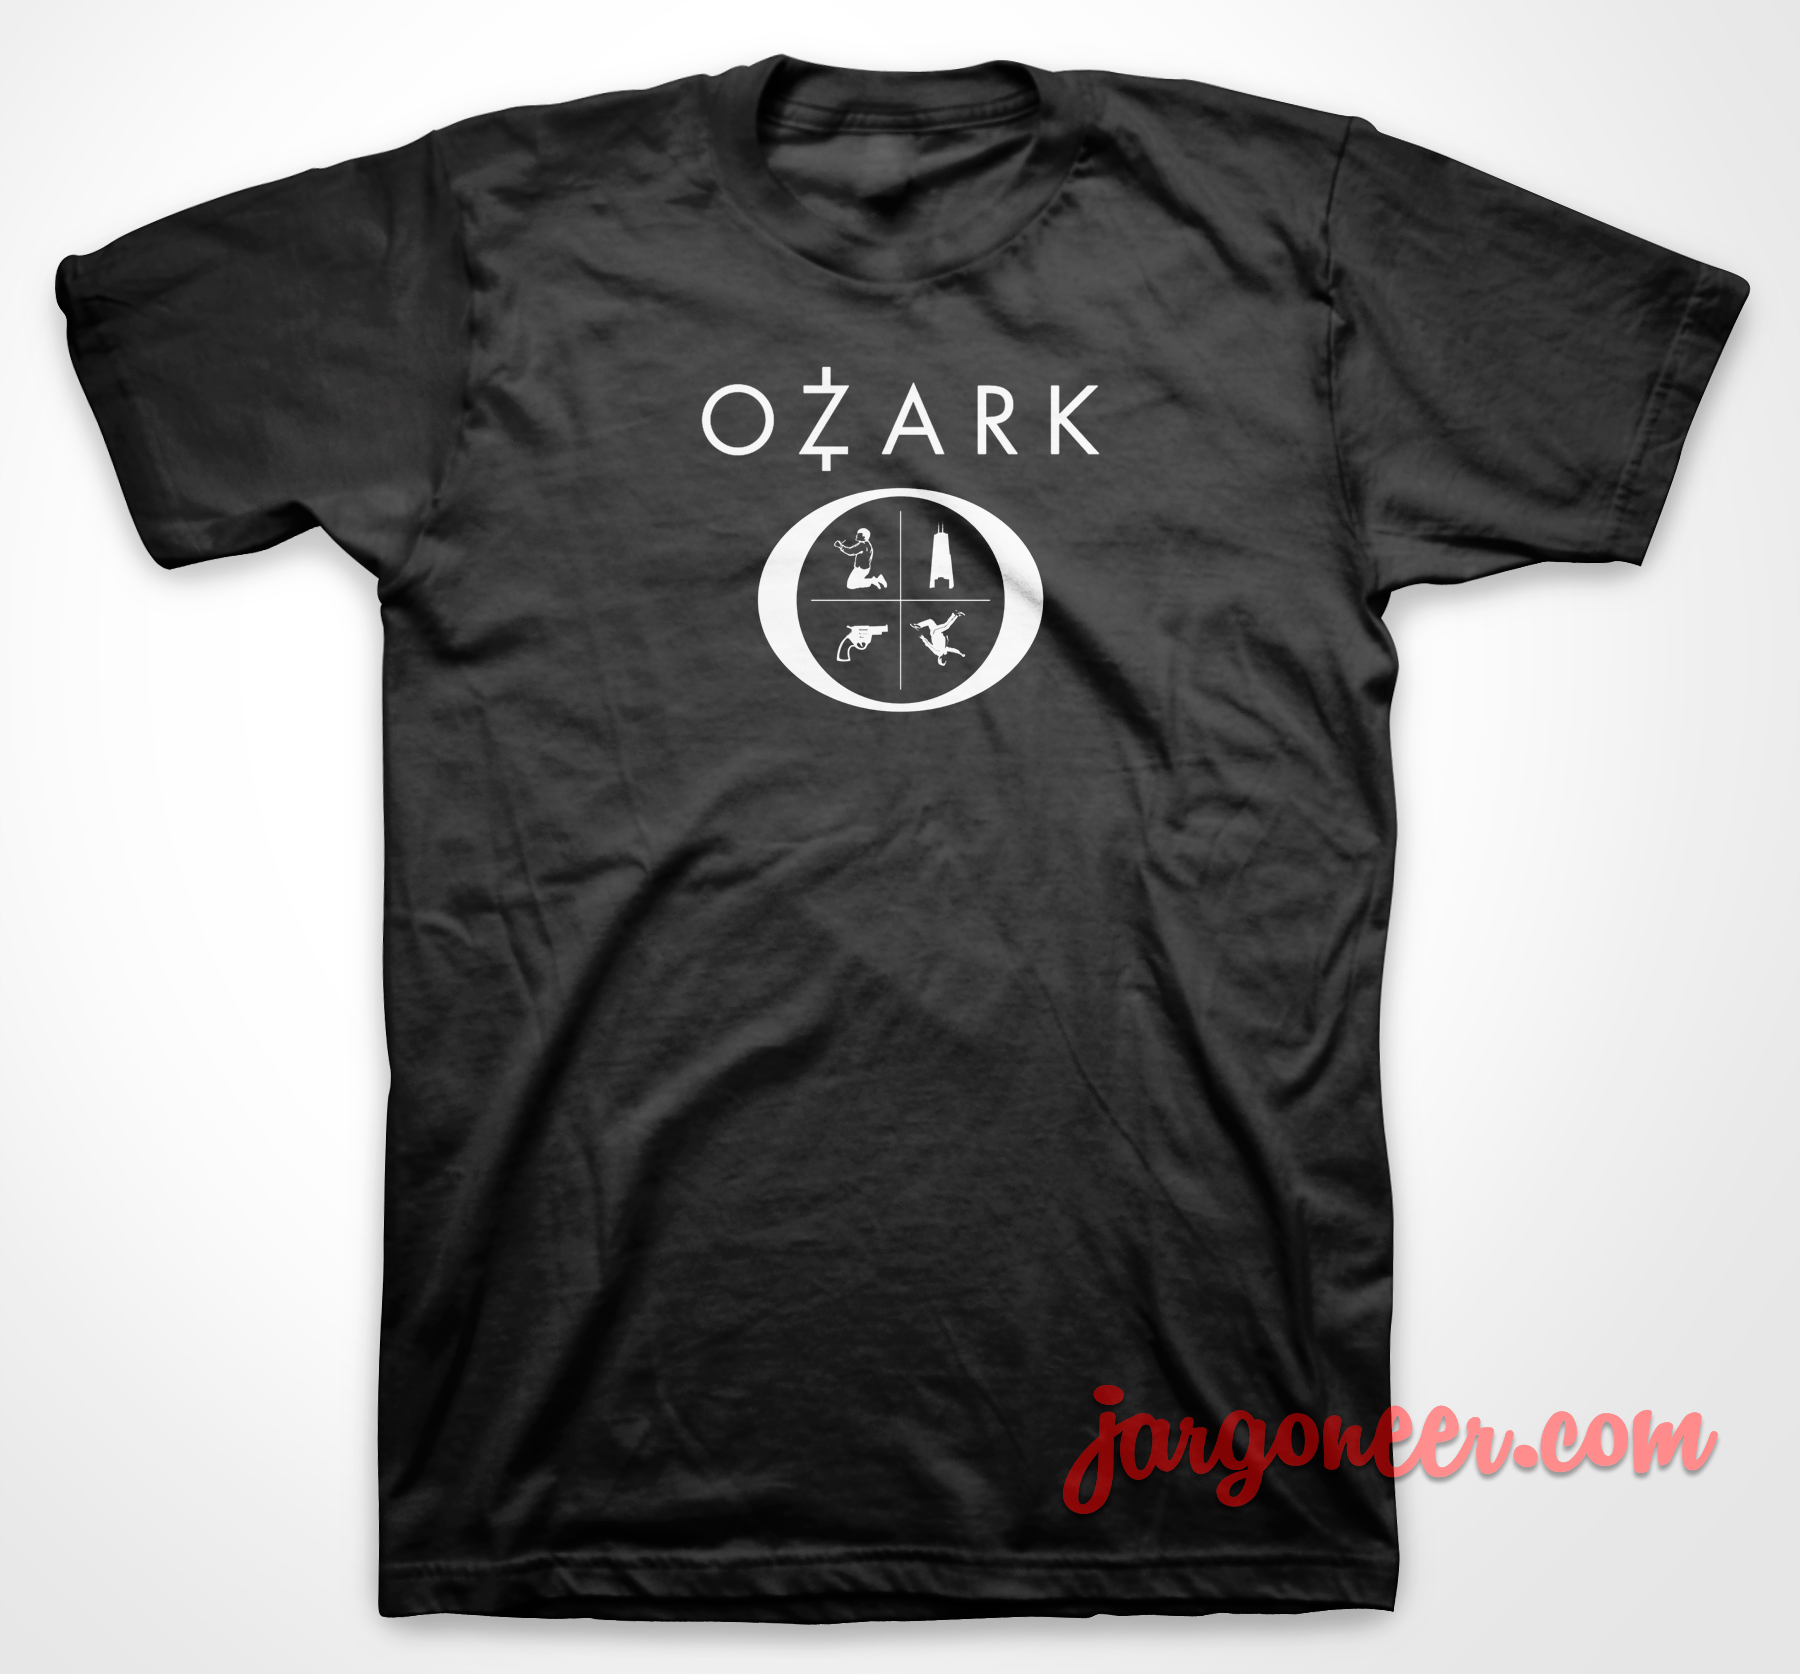 Ozark Series 3 - Shop Unique Graphic Cool Shirt Designs